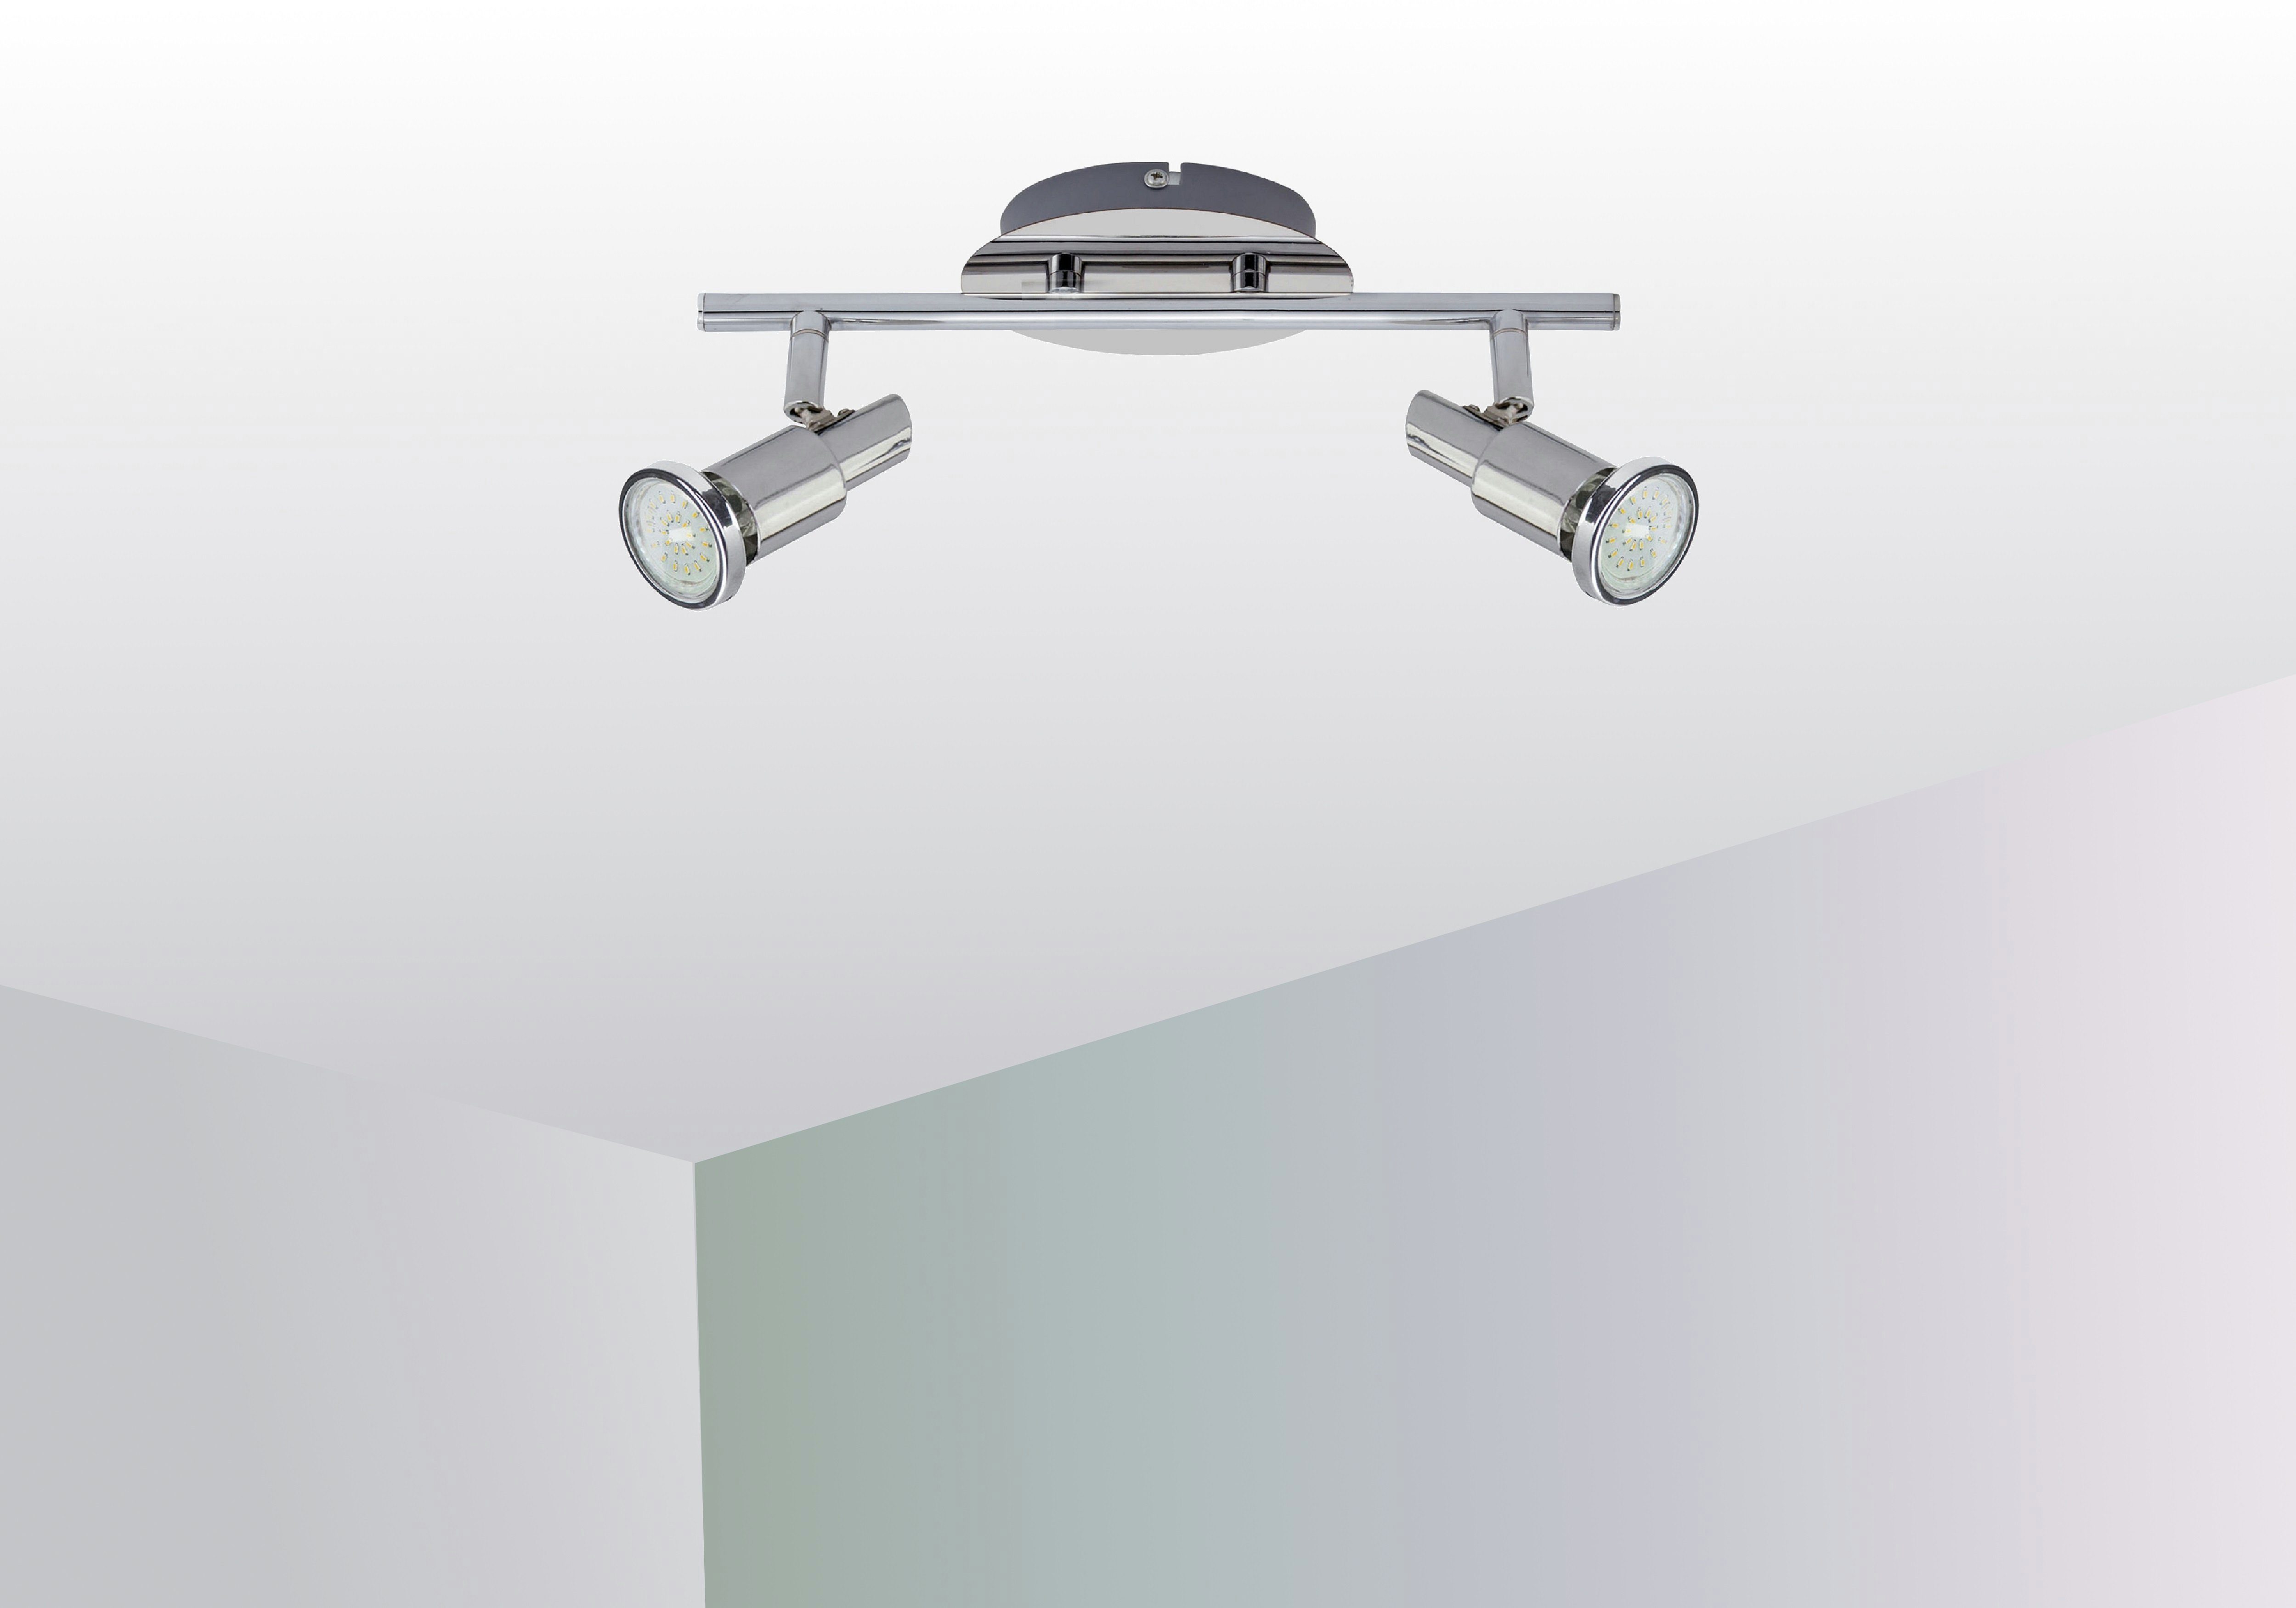 TRANGO LED Deckenspots, 2-flammig 2890-028-5W LED Deckenleuchte OSCAR inkl. 2x 5 Watt GU10 LED Leuchtmittel in Chrom-Optik Deckenlampe, Deckenstrahler, Deckenspots, Lampe schwenkbar und drehbar